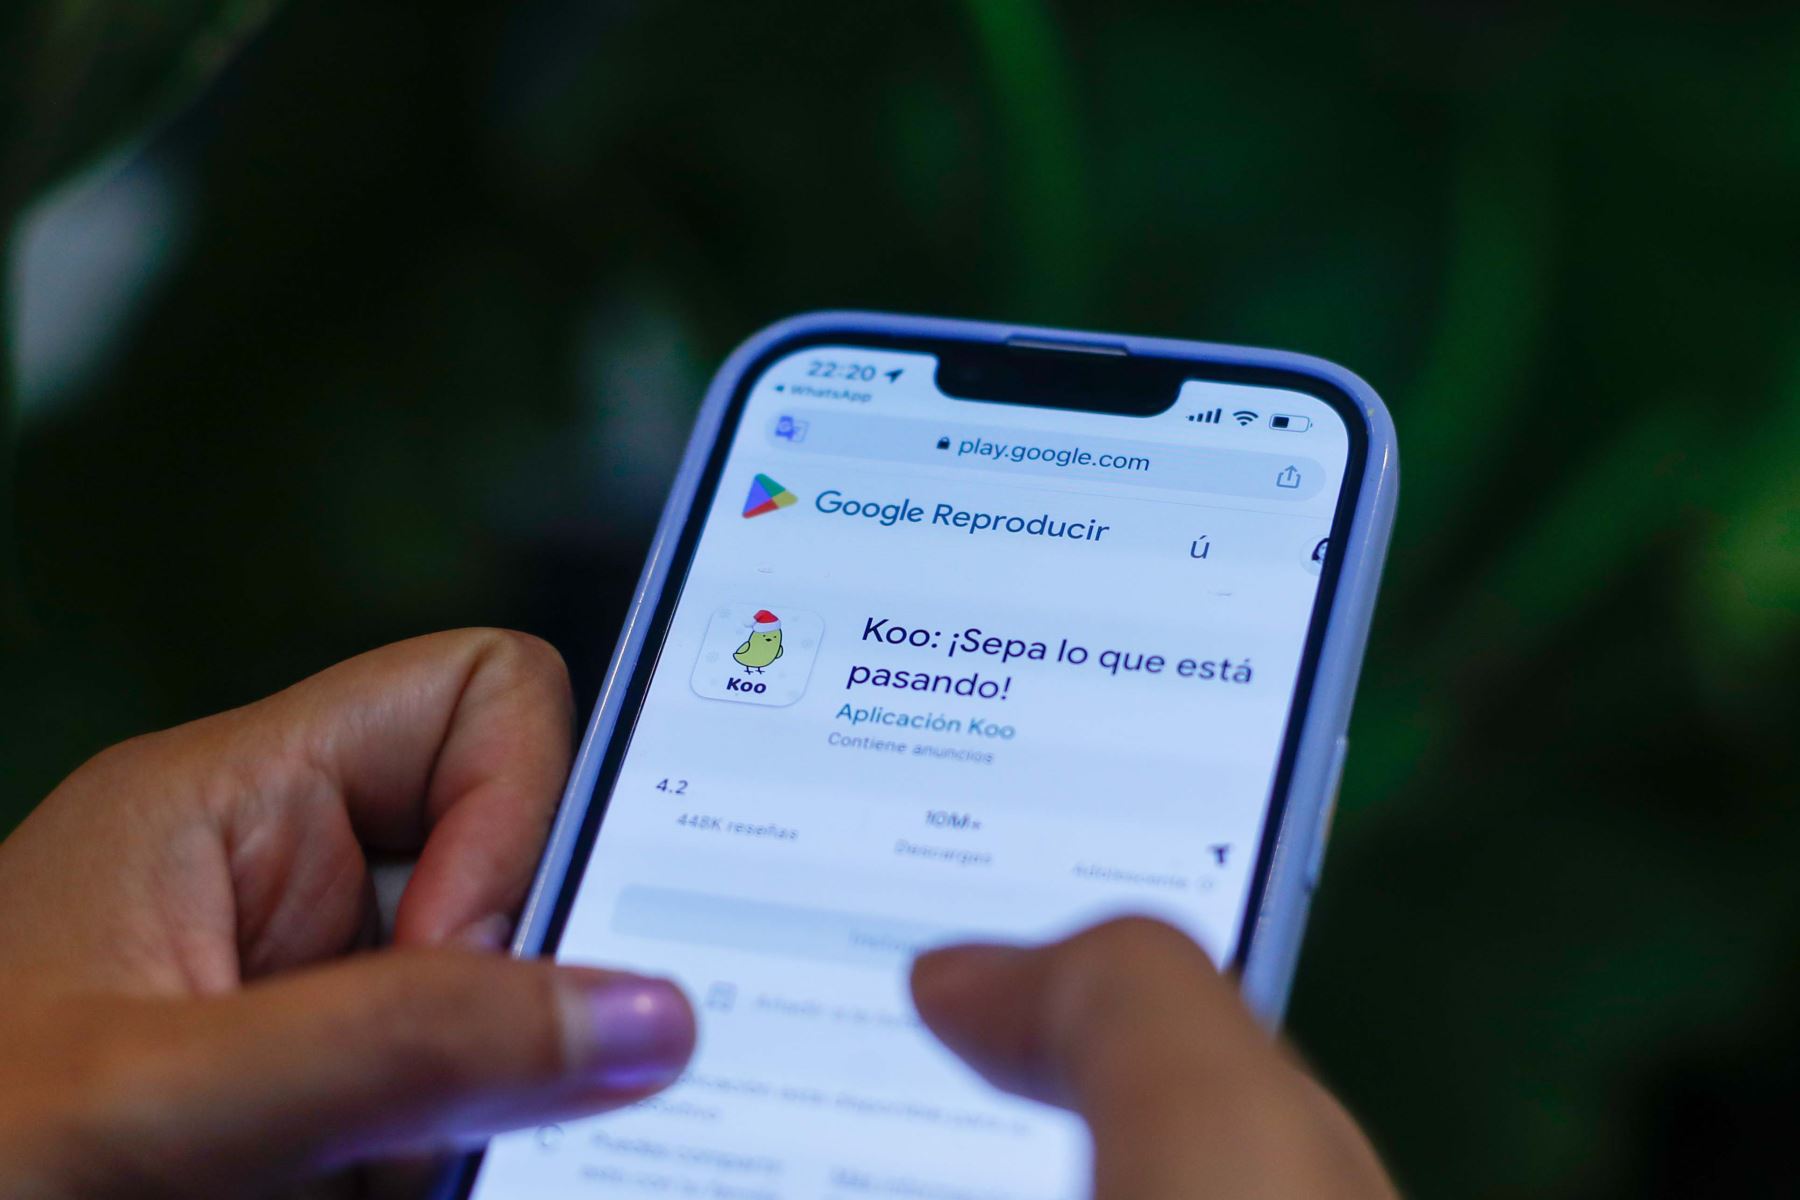 Lanzada en marzo de 2020, Koo es una plataforma de microblogging basada en el idioma del usuario, que ofrece algunas funciones que la distinguen de Twitter. Ya tiene más de 60 millones de descargas. Foto: ANDINA/Carla Patiño Ramírez